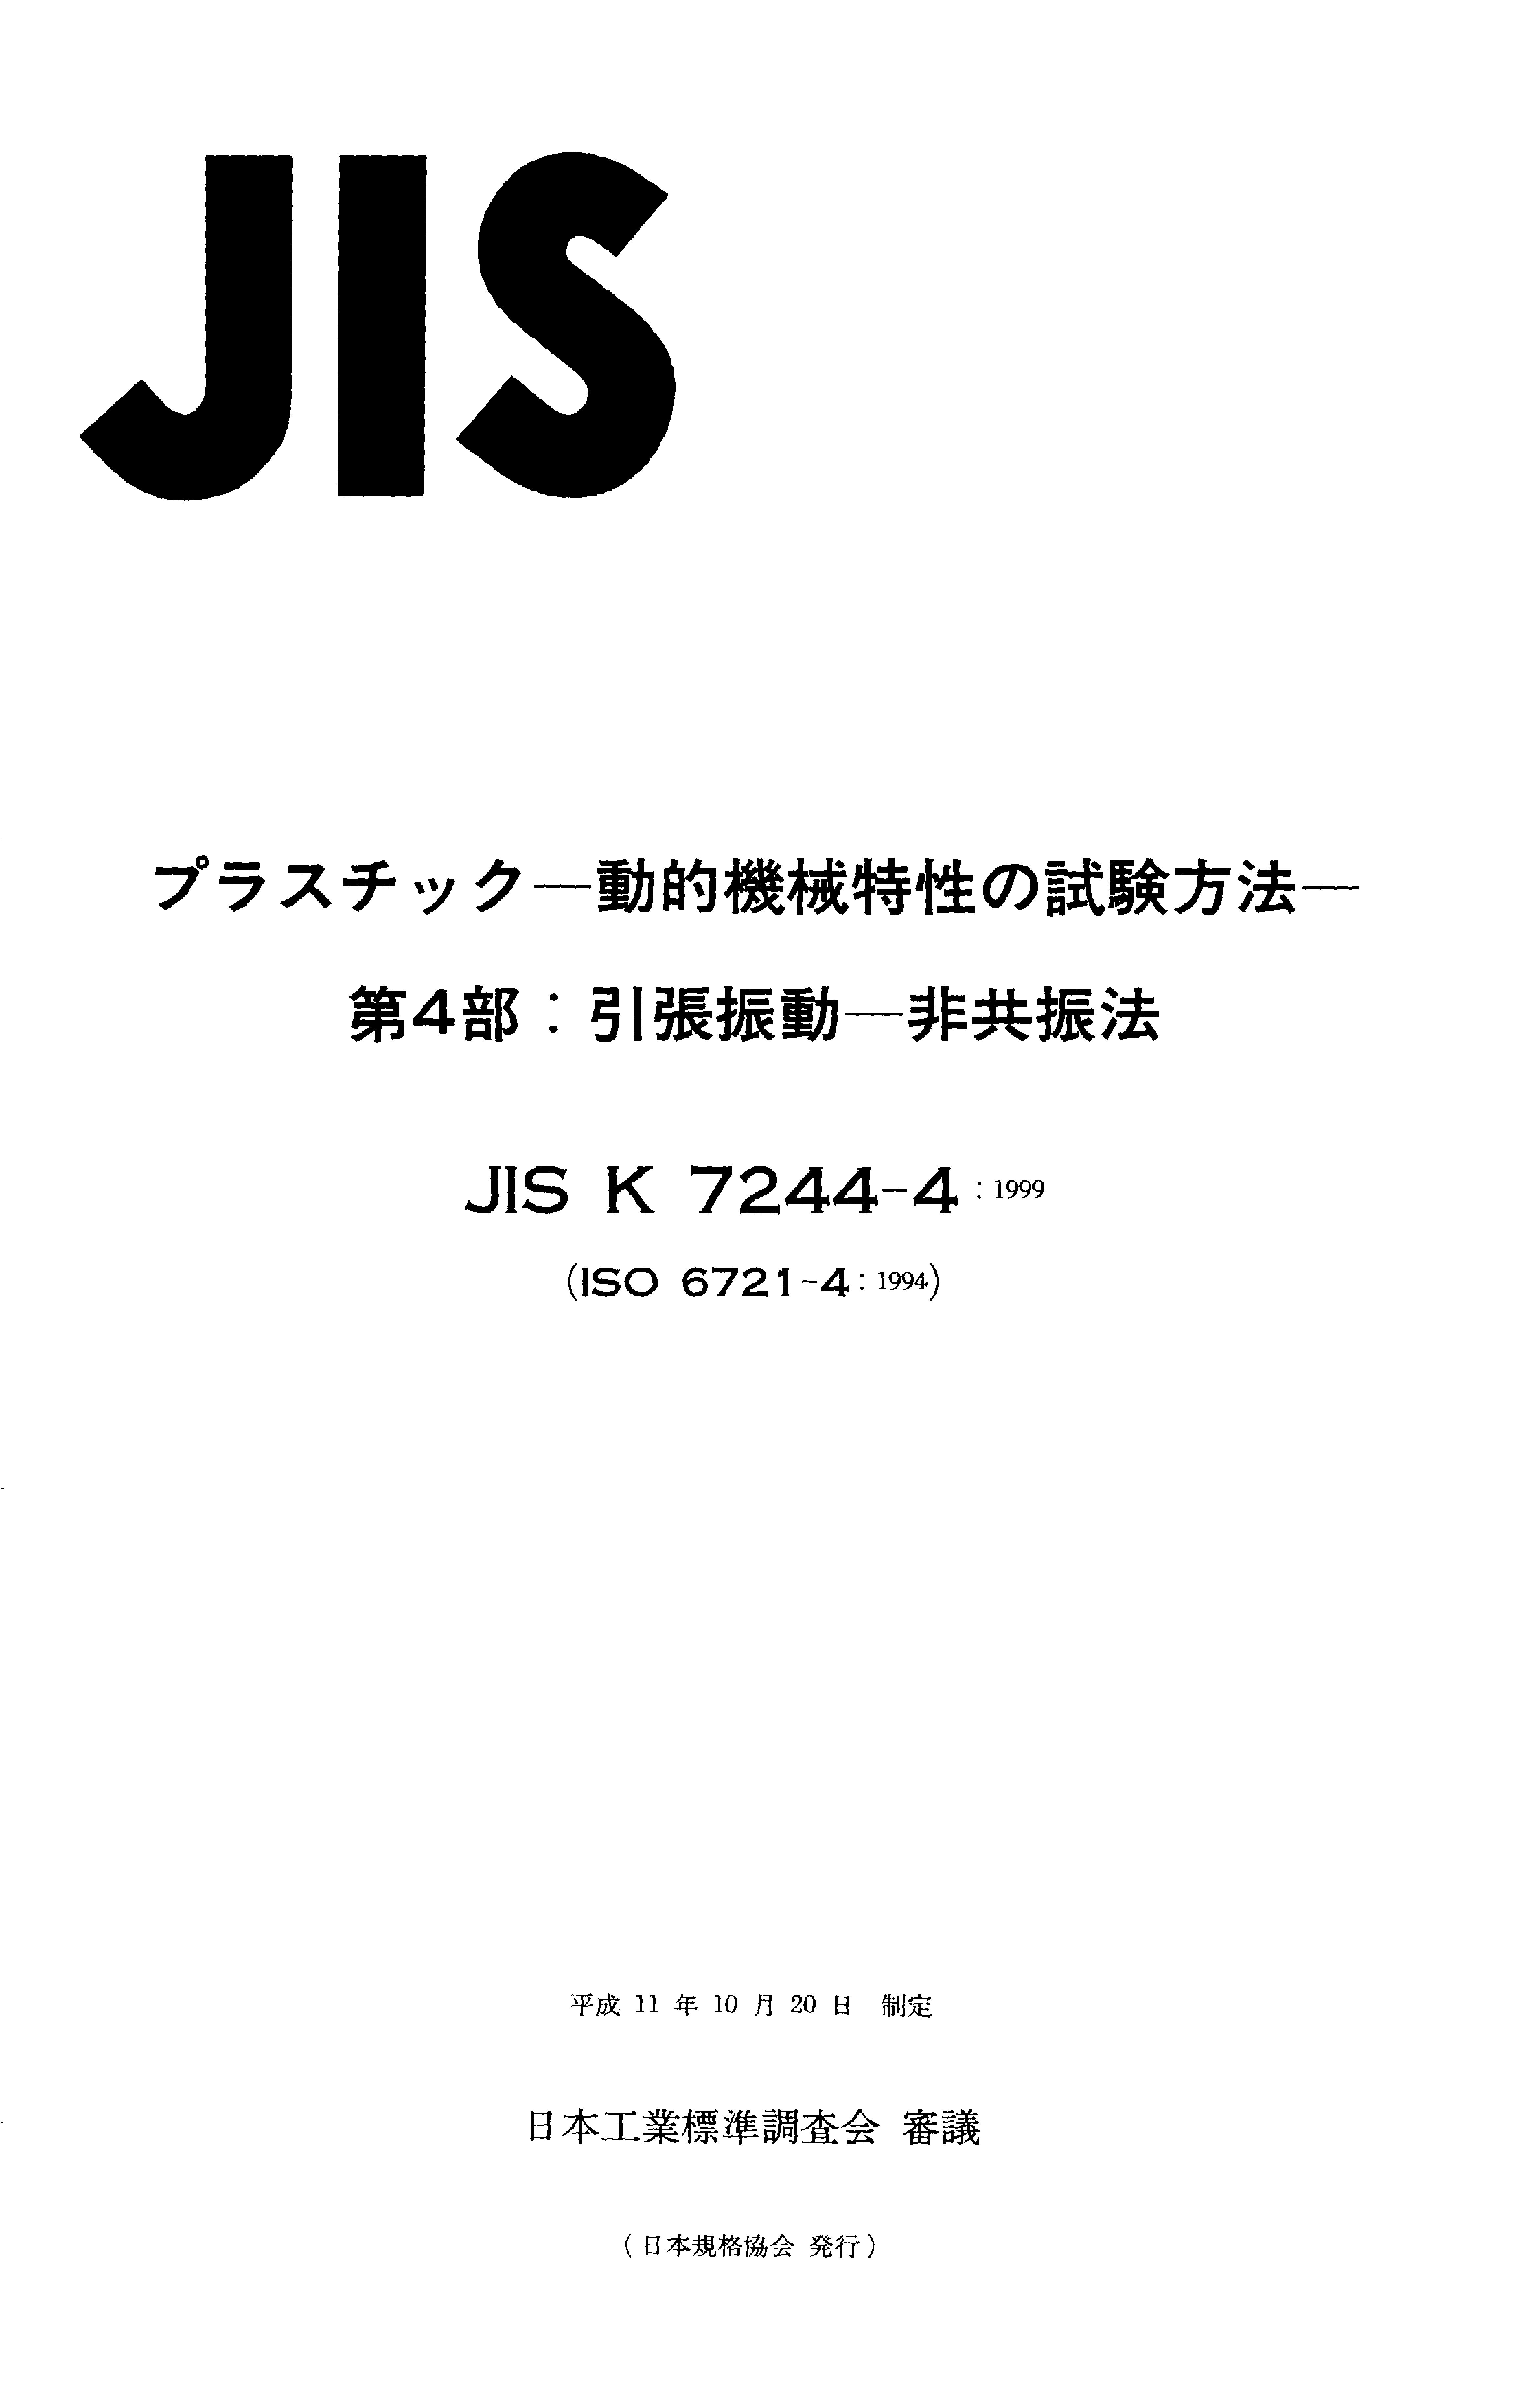 JIS K 7244-4:1999